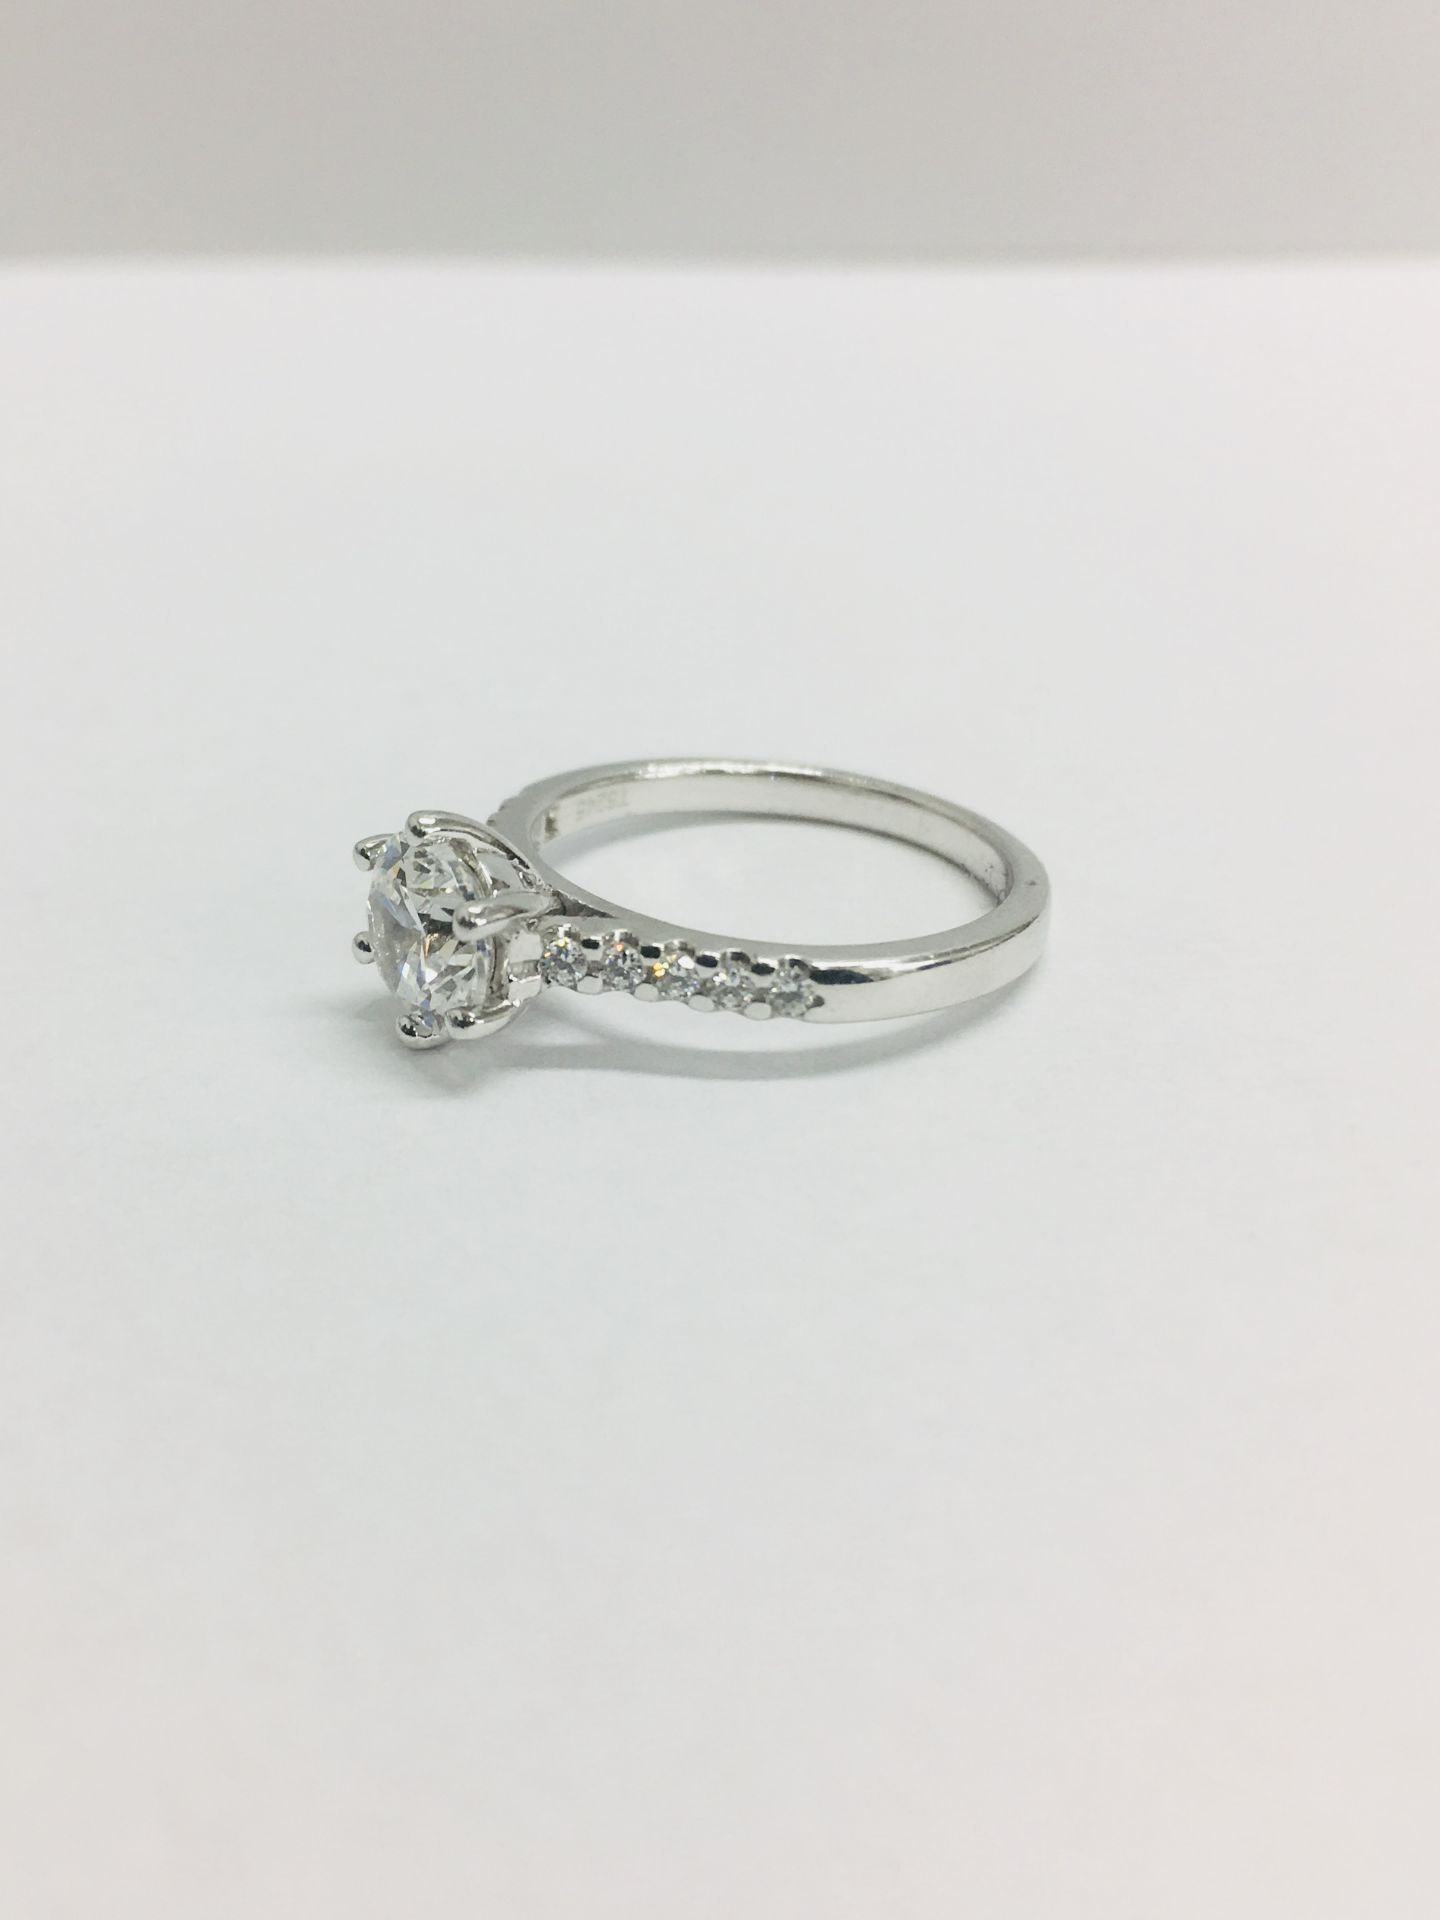 Platinum diamond solitaire ring,0.50ct brilliant cut diamond vs clarity h colour (clarity - Image 4 of 5